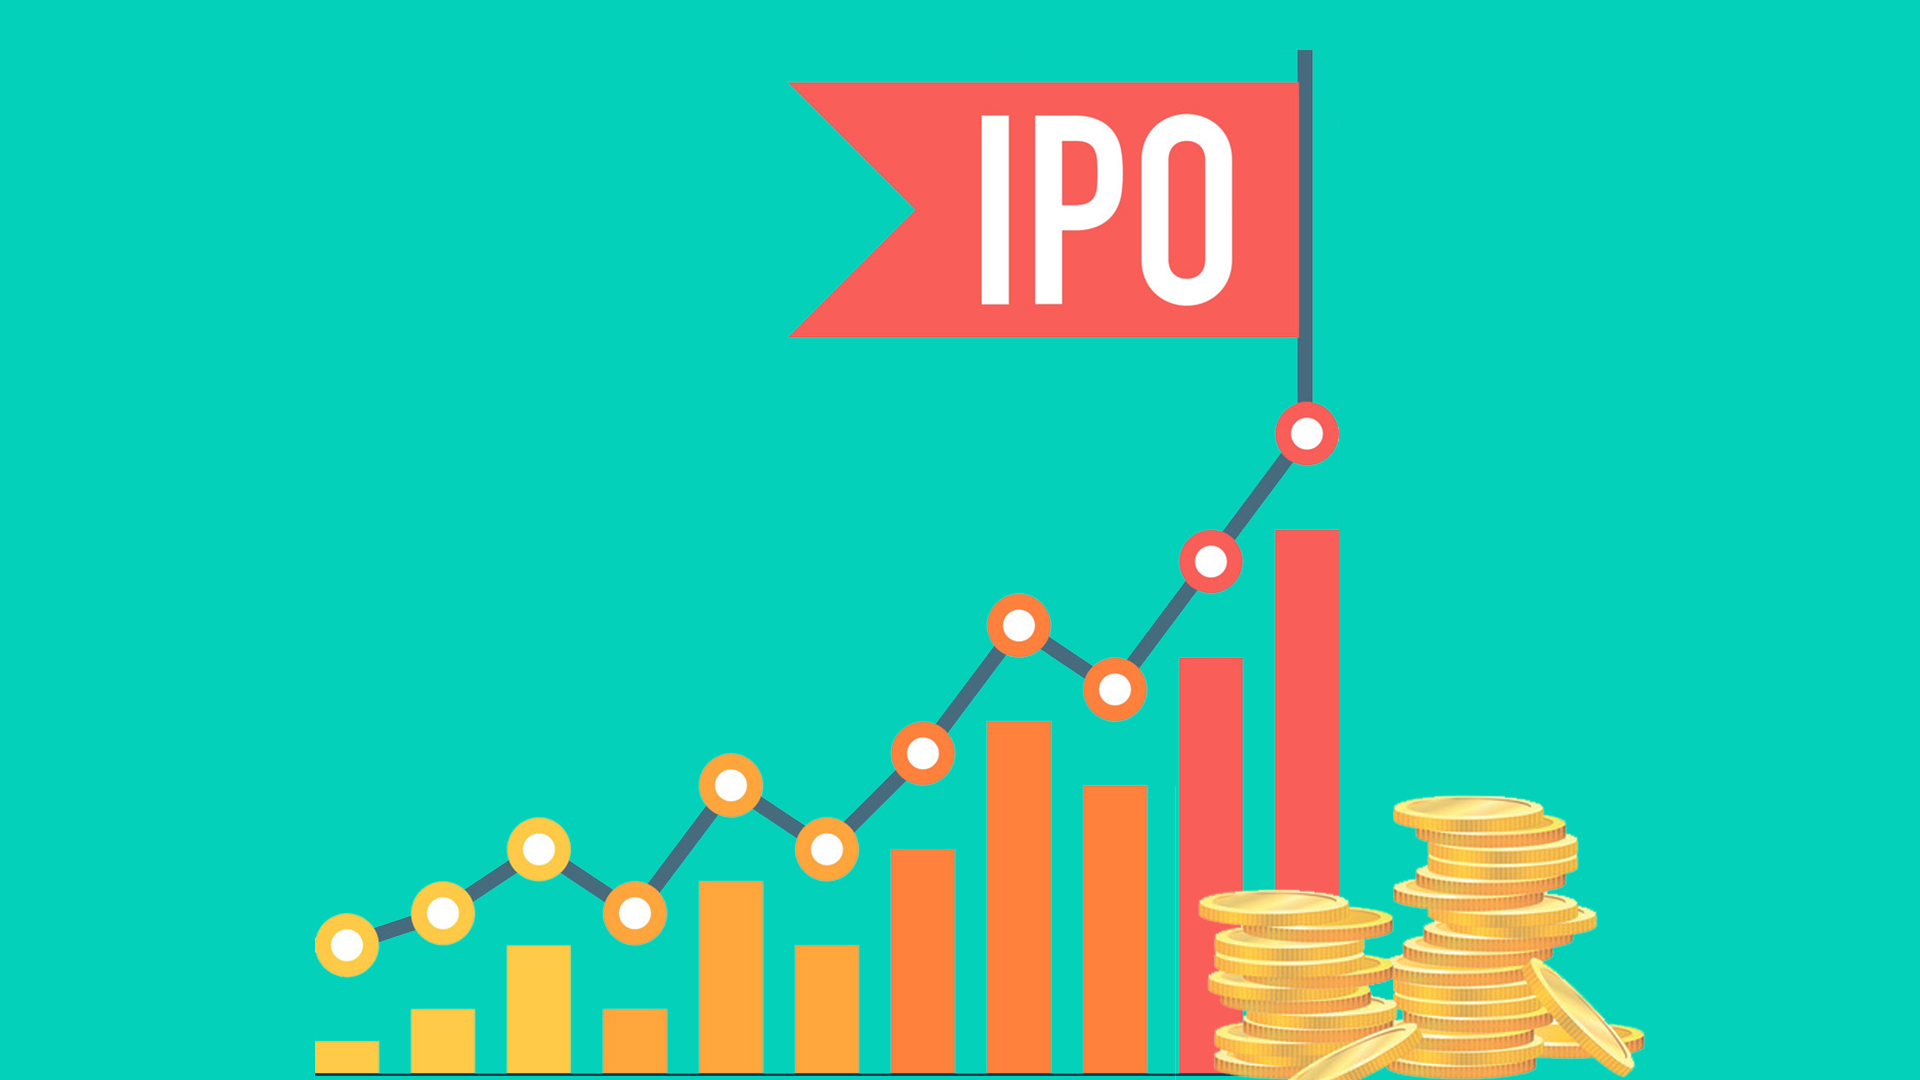 Public offer. IPO. IPO компании. IPO картинки. IPO инвестиции.